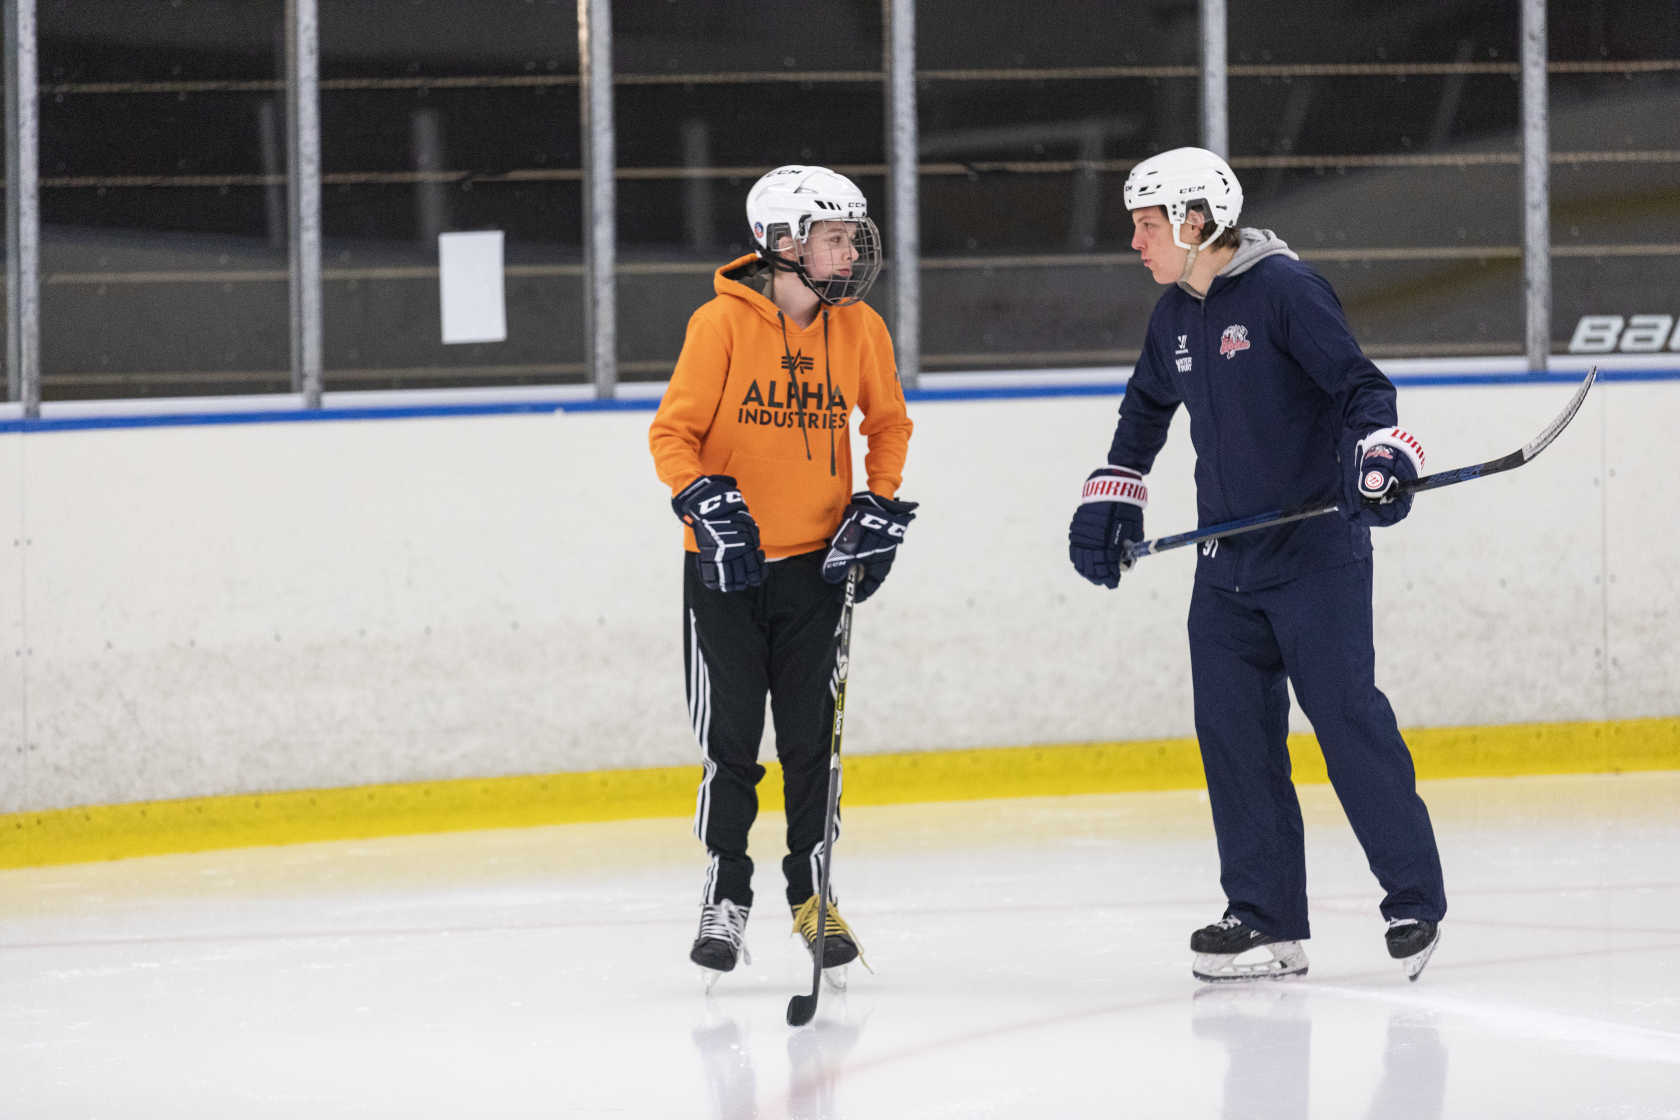 Två personer åker skridskor på isen och pratar med varandra. De har varsin ishockeyklubba.